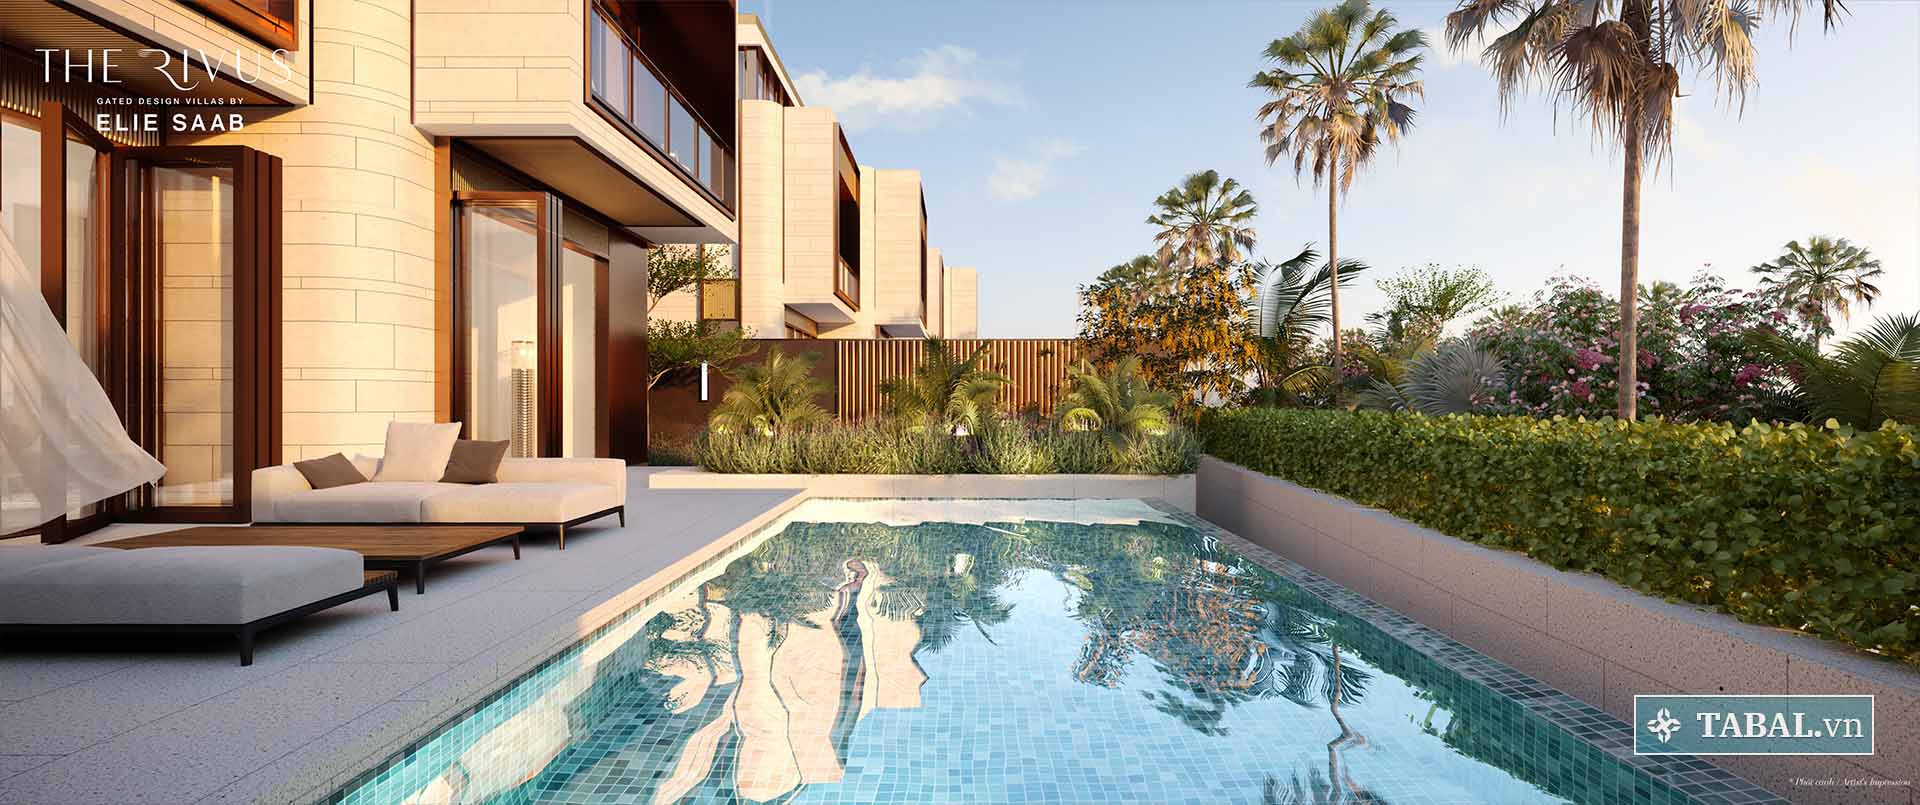 The Rivus - Mỗi căn dinh thự được thiết kế hồ bơi riêng.